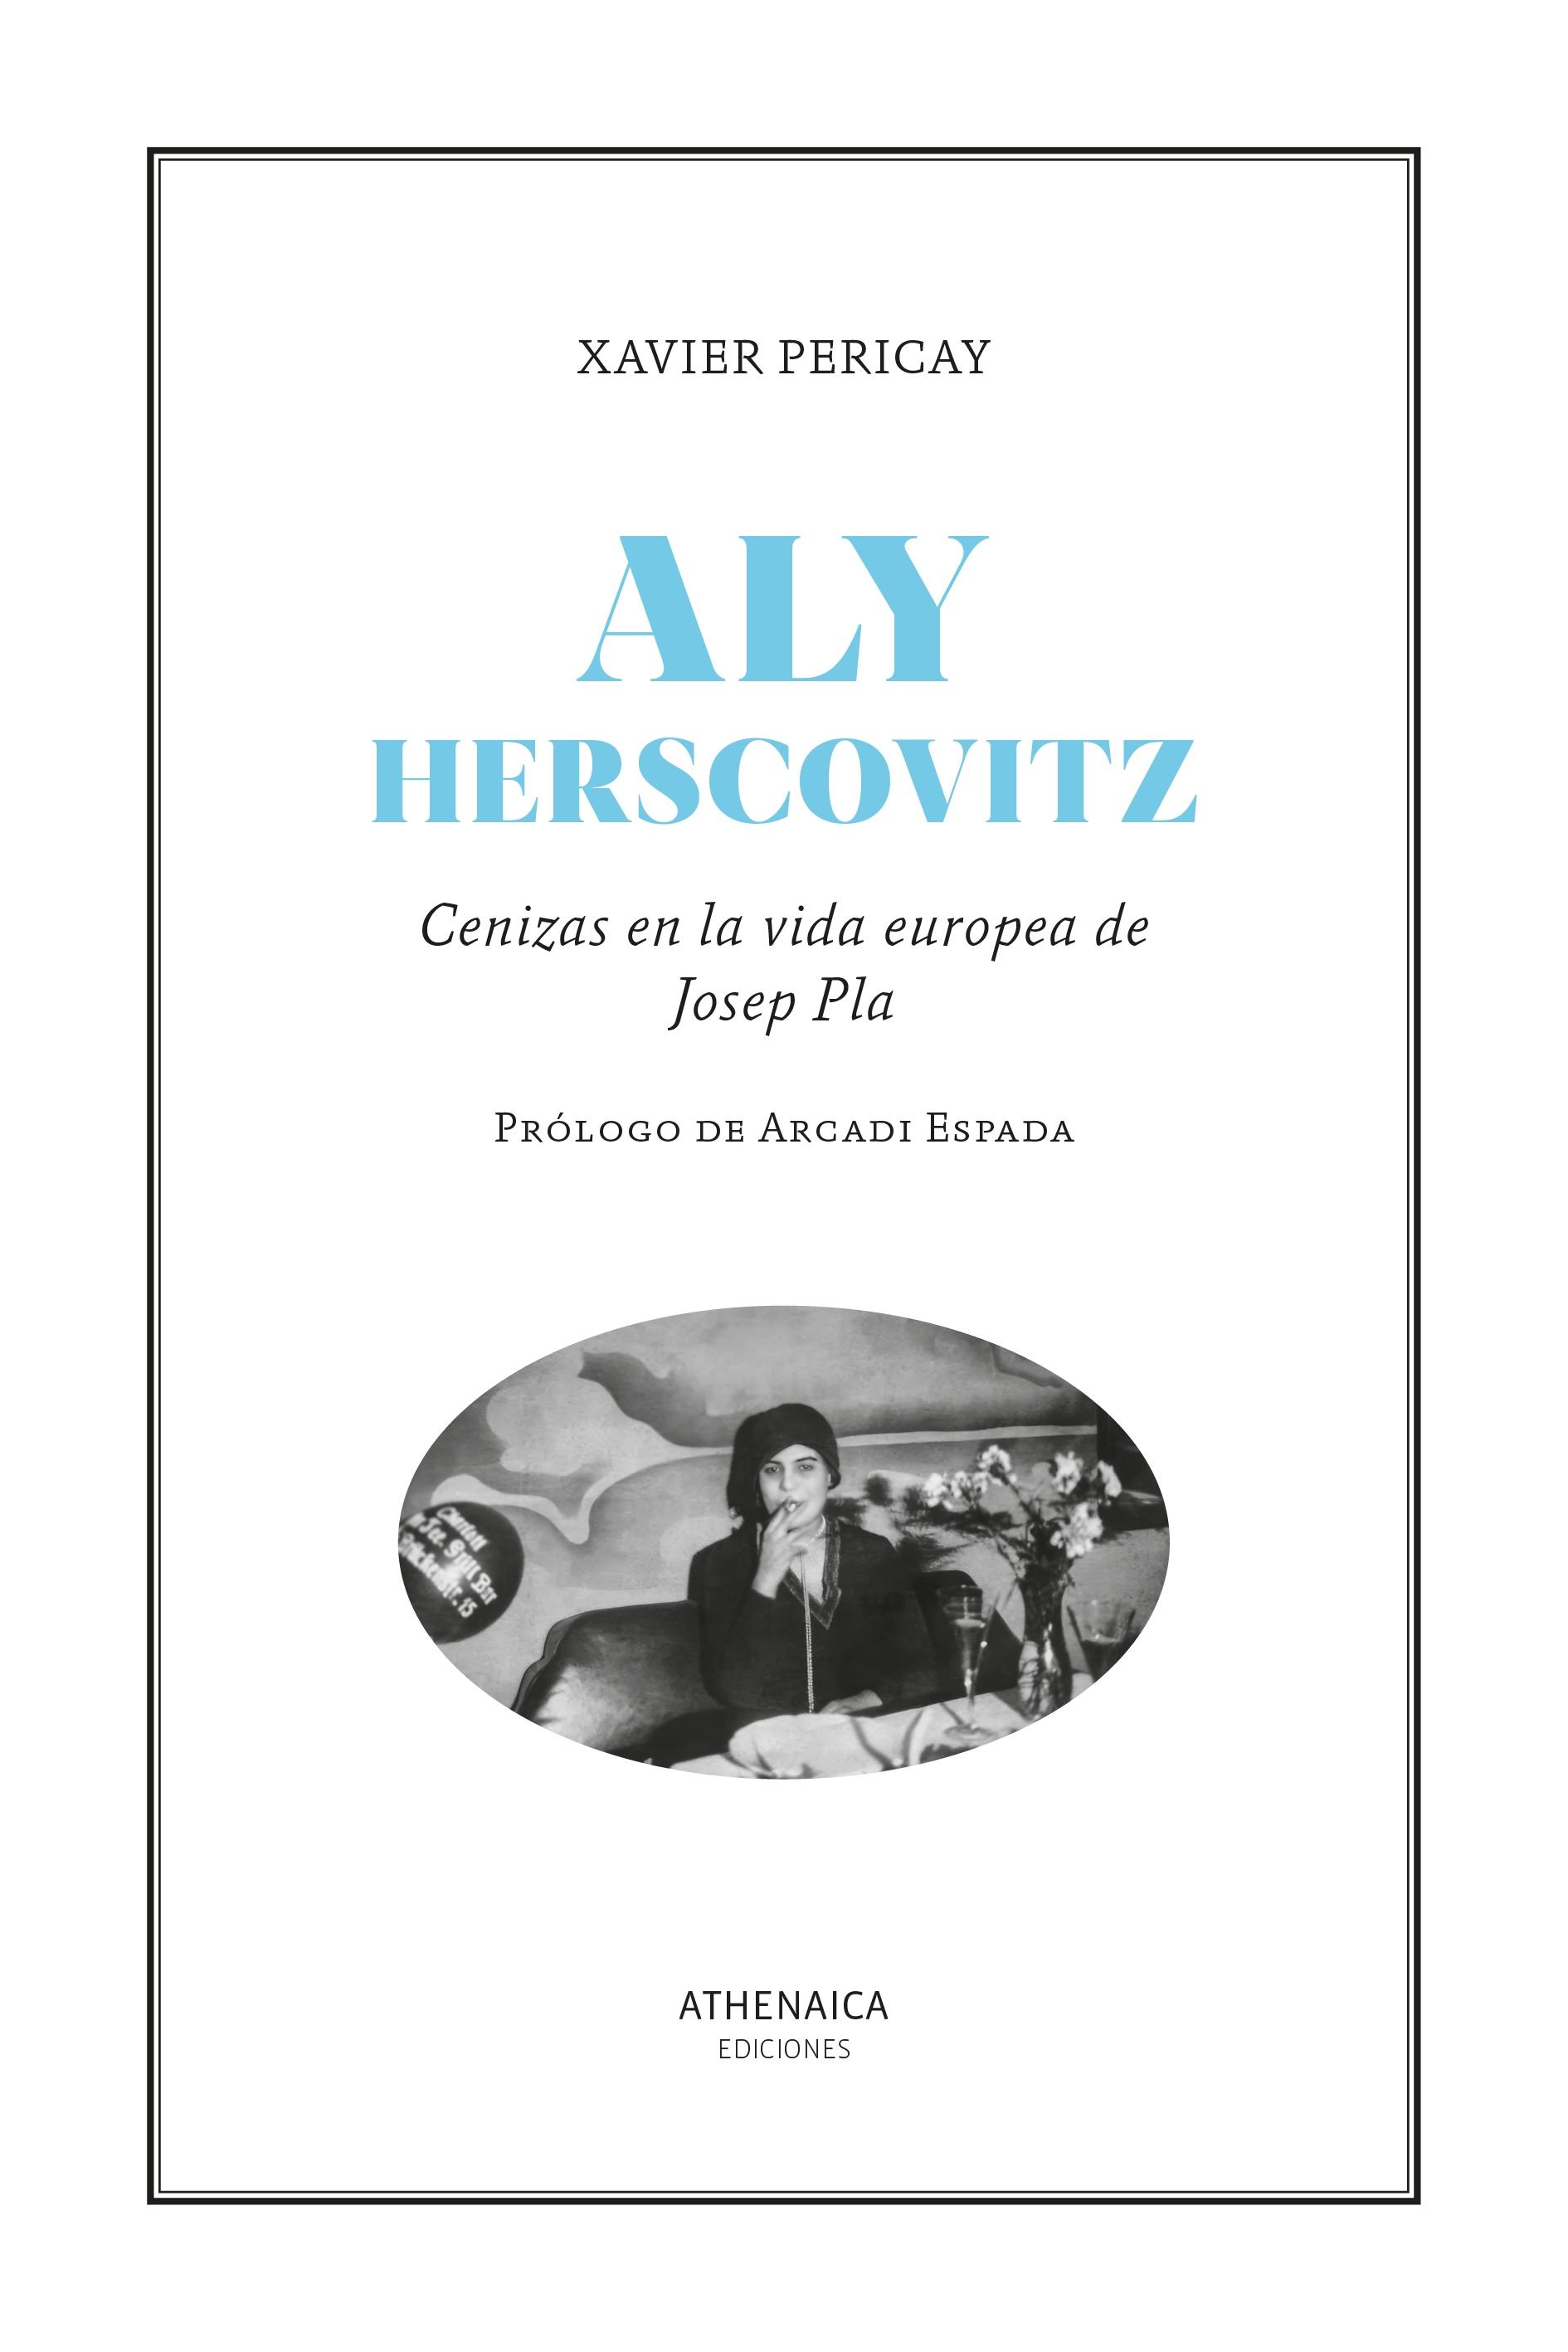 Aly Herscovitz "Cenizas en la vida europea de Josep Pla". 